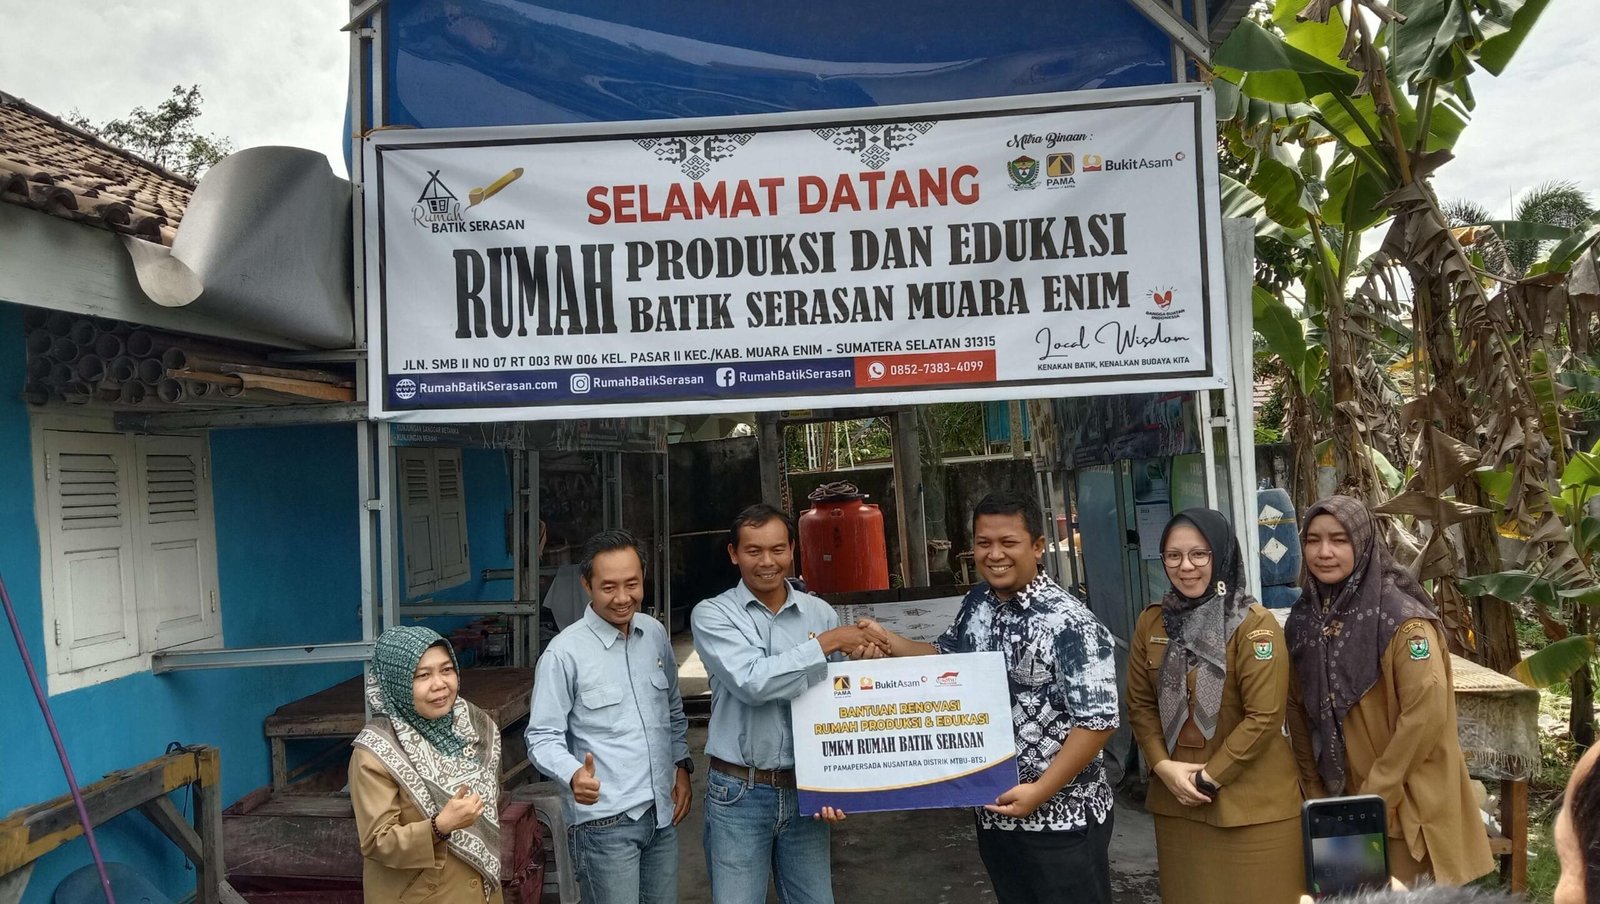 Deni Martana, Selaku SRGS Departemen Head PT Pamapersada Nusantara menyerahkan bantuan secara simbolis Renovasi Rumah Produksi Batik Serasan kepada Totok AH selaku Pengelola Rumah Batik Serasan